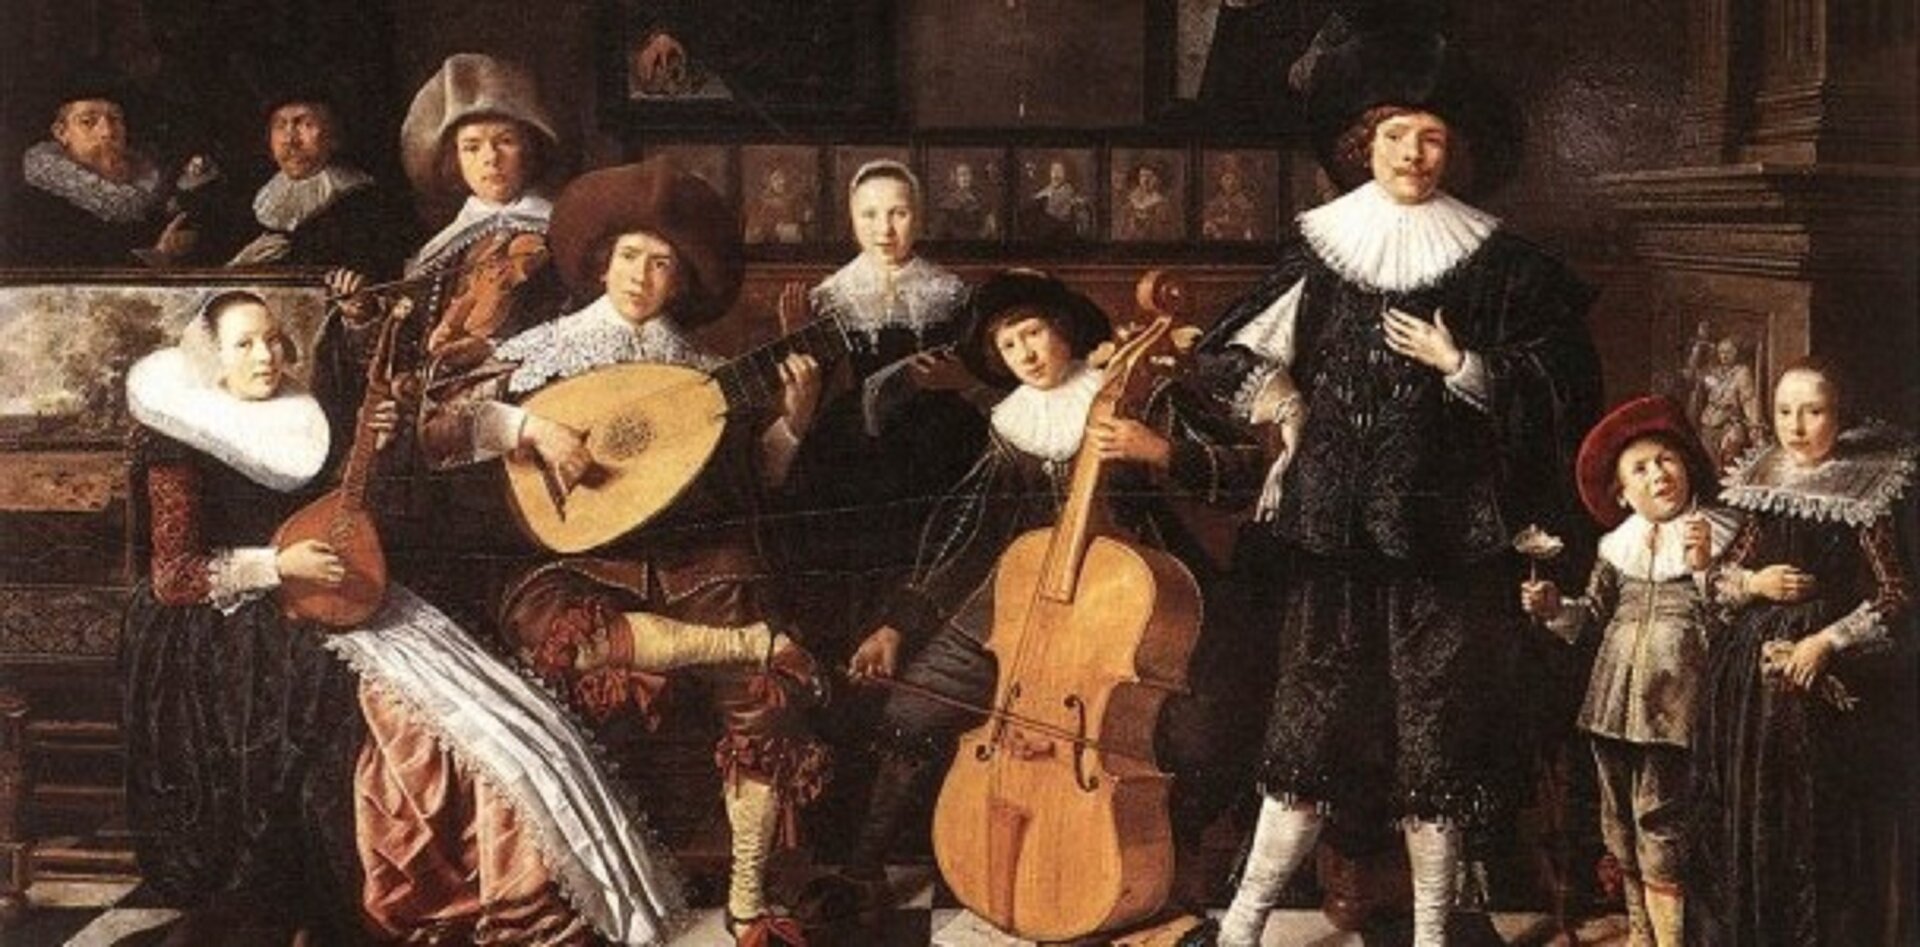 Ilustracja przedstawia dzieło Klaesa Moleanera „Muzyka baroku”. Jest o orkiestra z czasów baroku. Mężczyźni, kobiety oraz dzieci w strojach odpowiednich do epoki baroku, charakterystyczne dla nich są żaboty oraz czepki. Postaci grają na instrumentach.